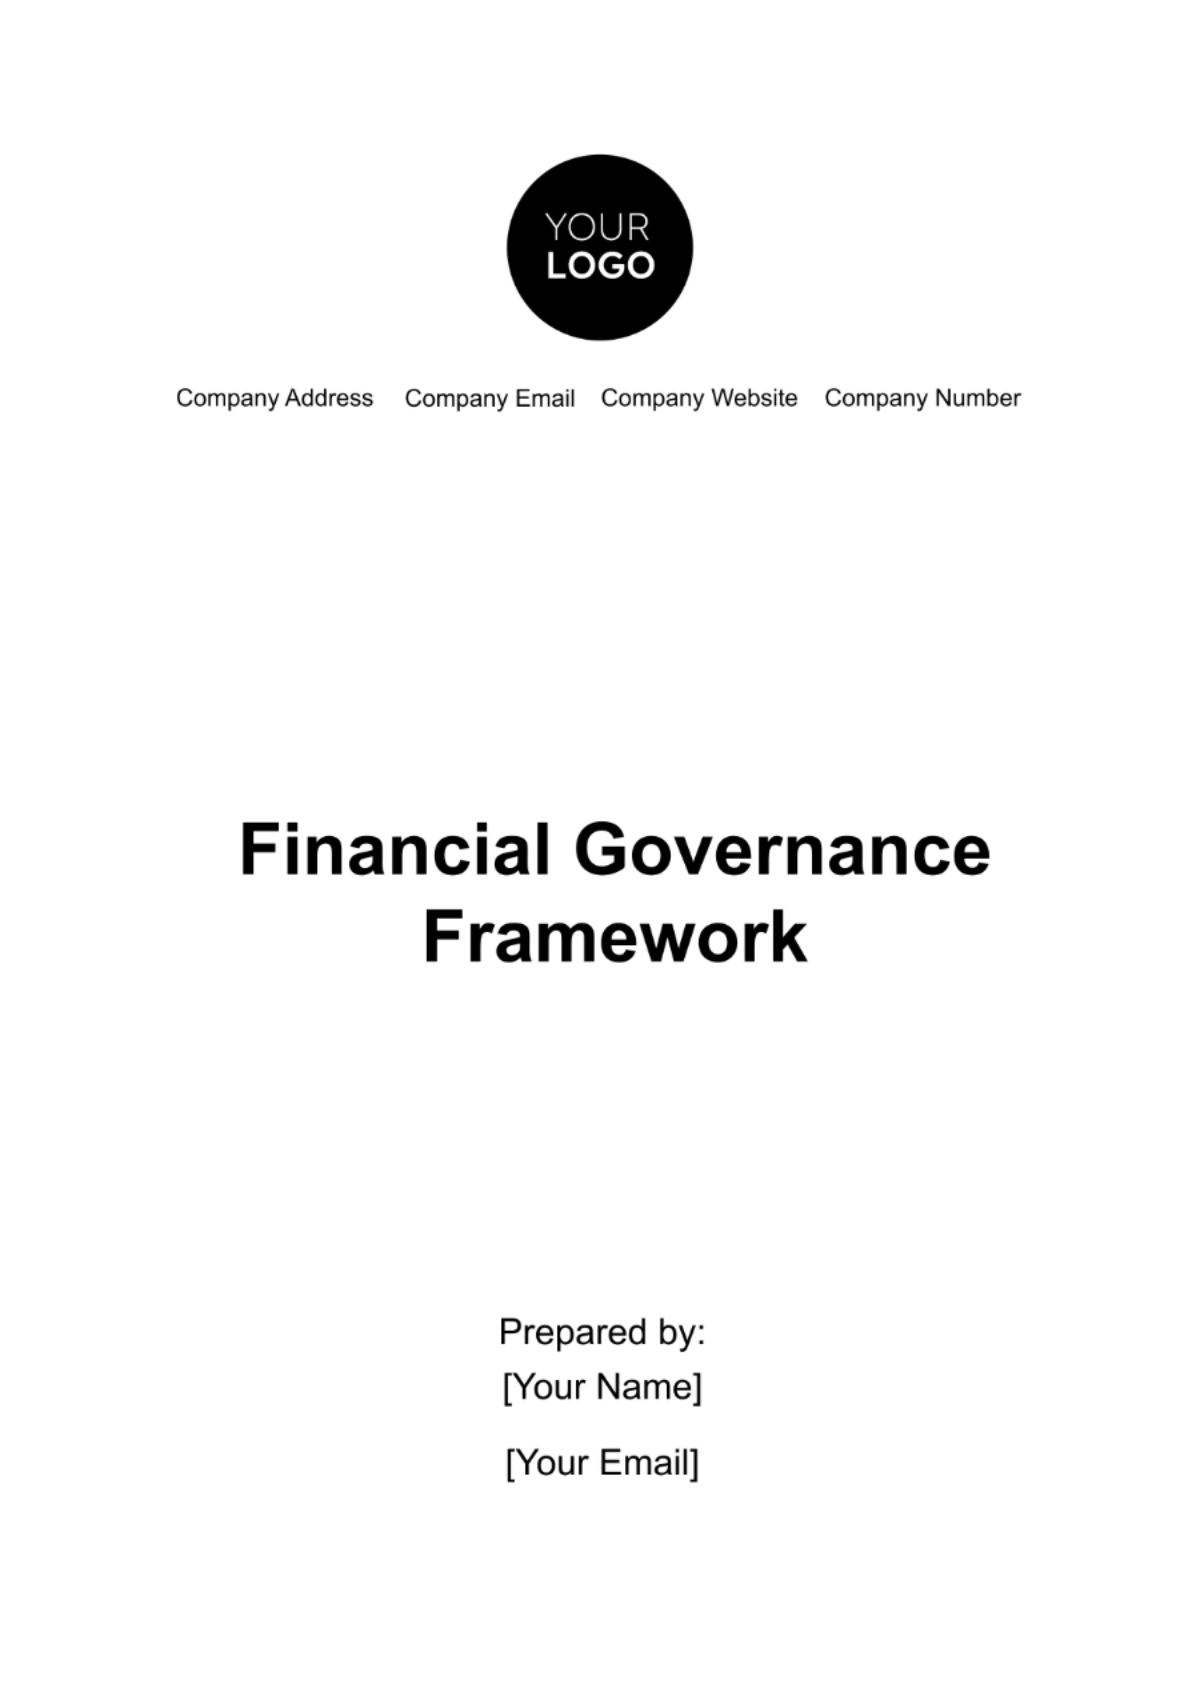 Financial Governance Framework Template